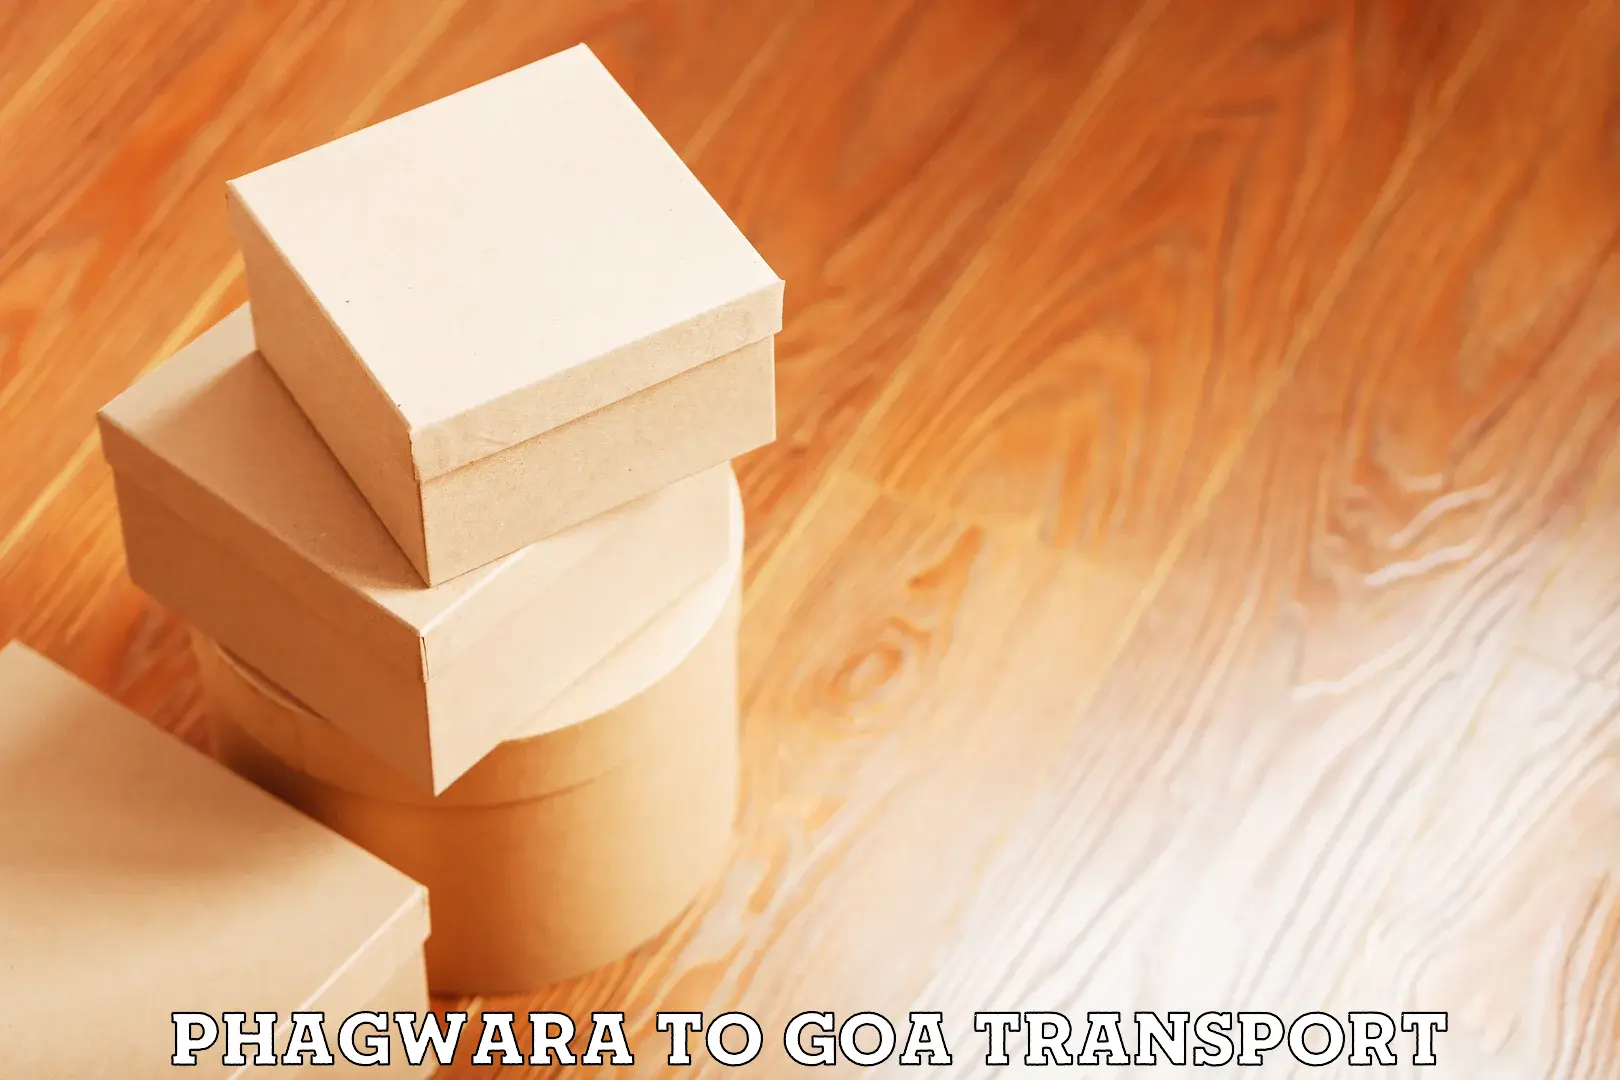 Pick up transport service Phagwara to Panjim